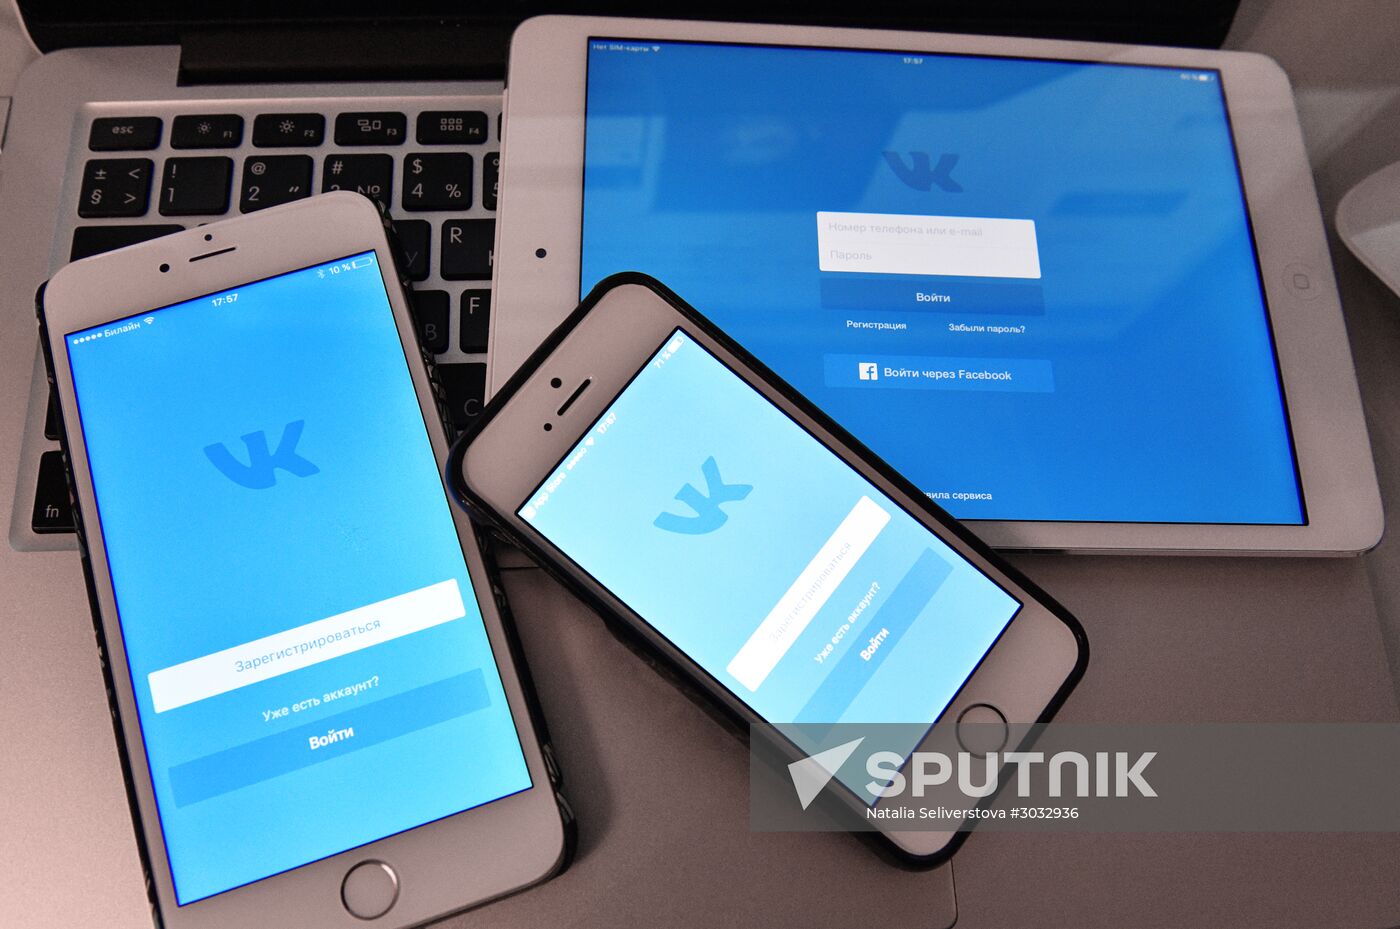 Vkontakte social network service